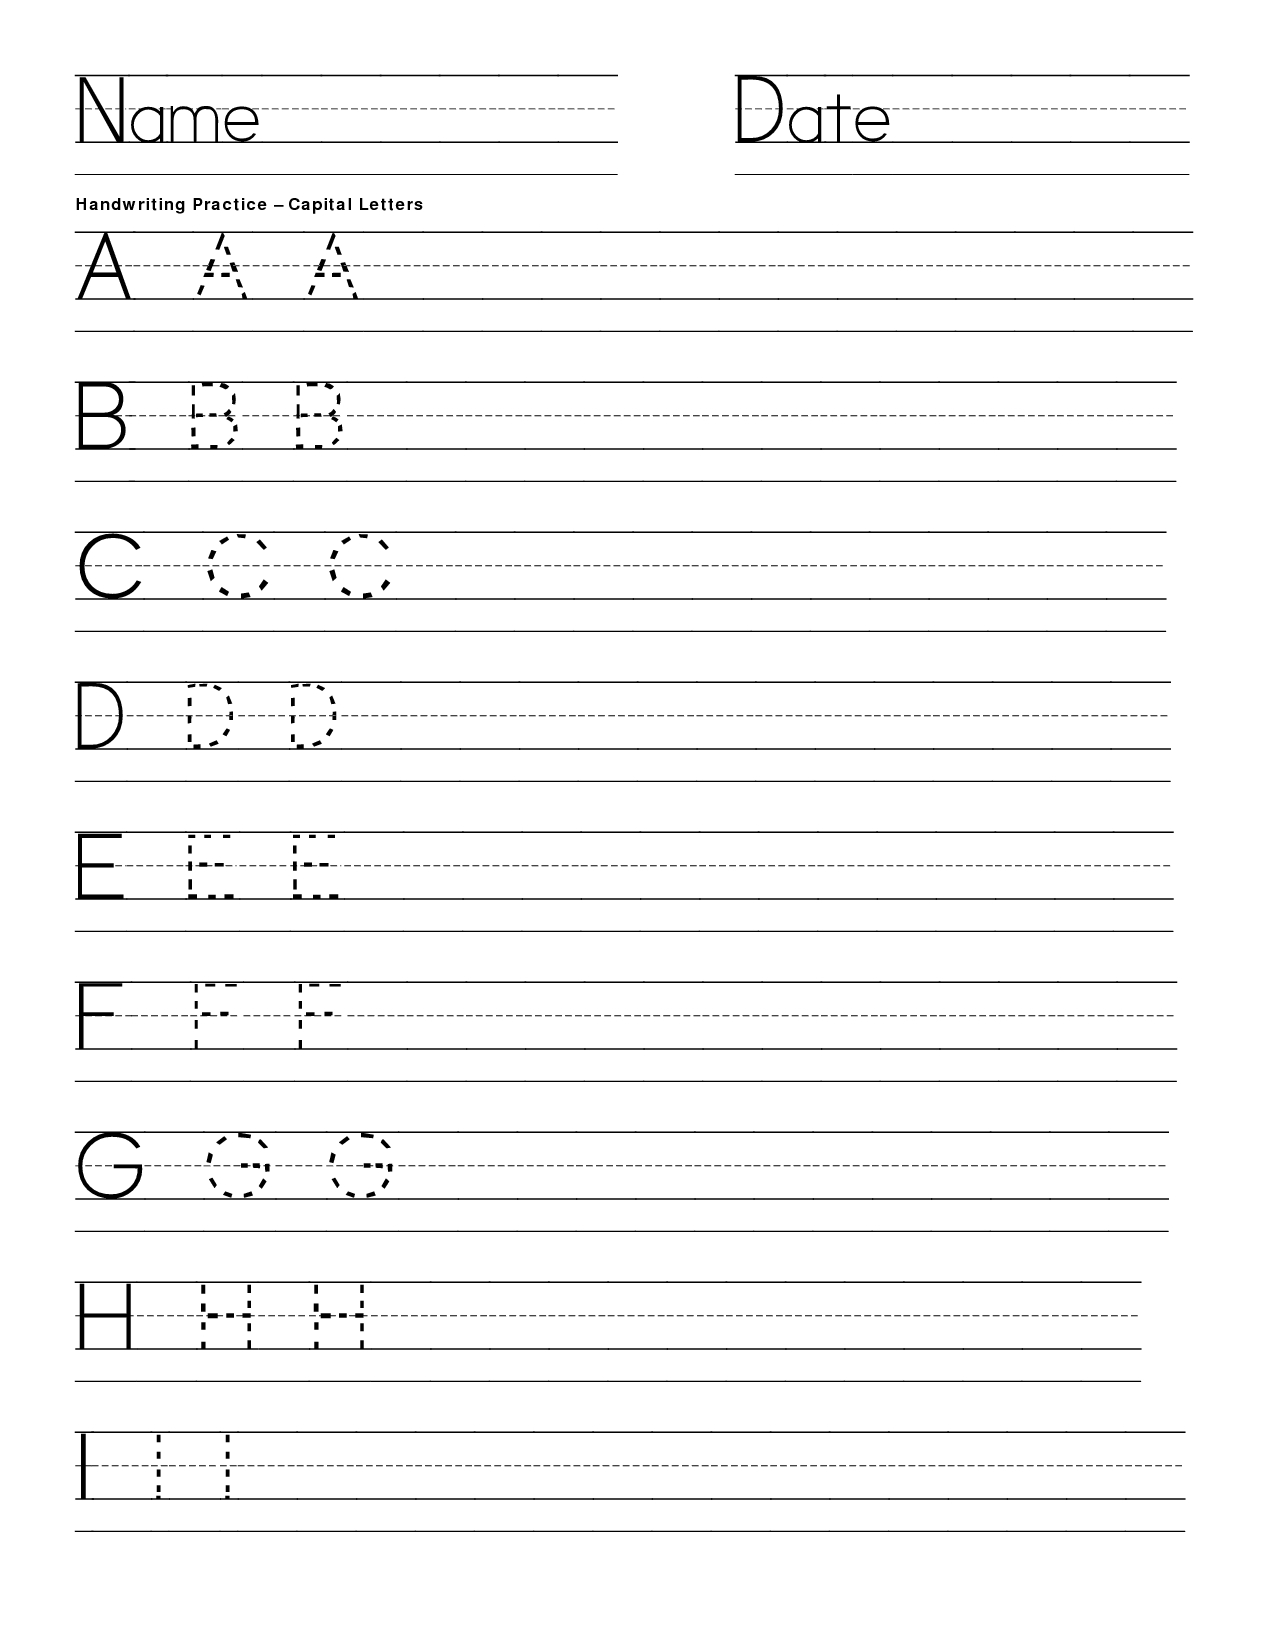 Writing Practice | Handwriting Practice Capital Letters | Teaching | Blank Handwriting Worksheets Printable Free